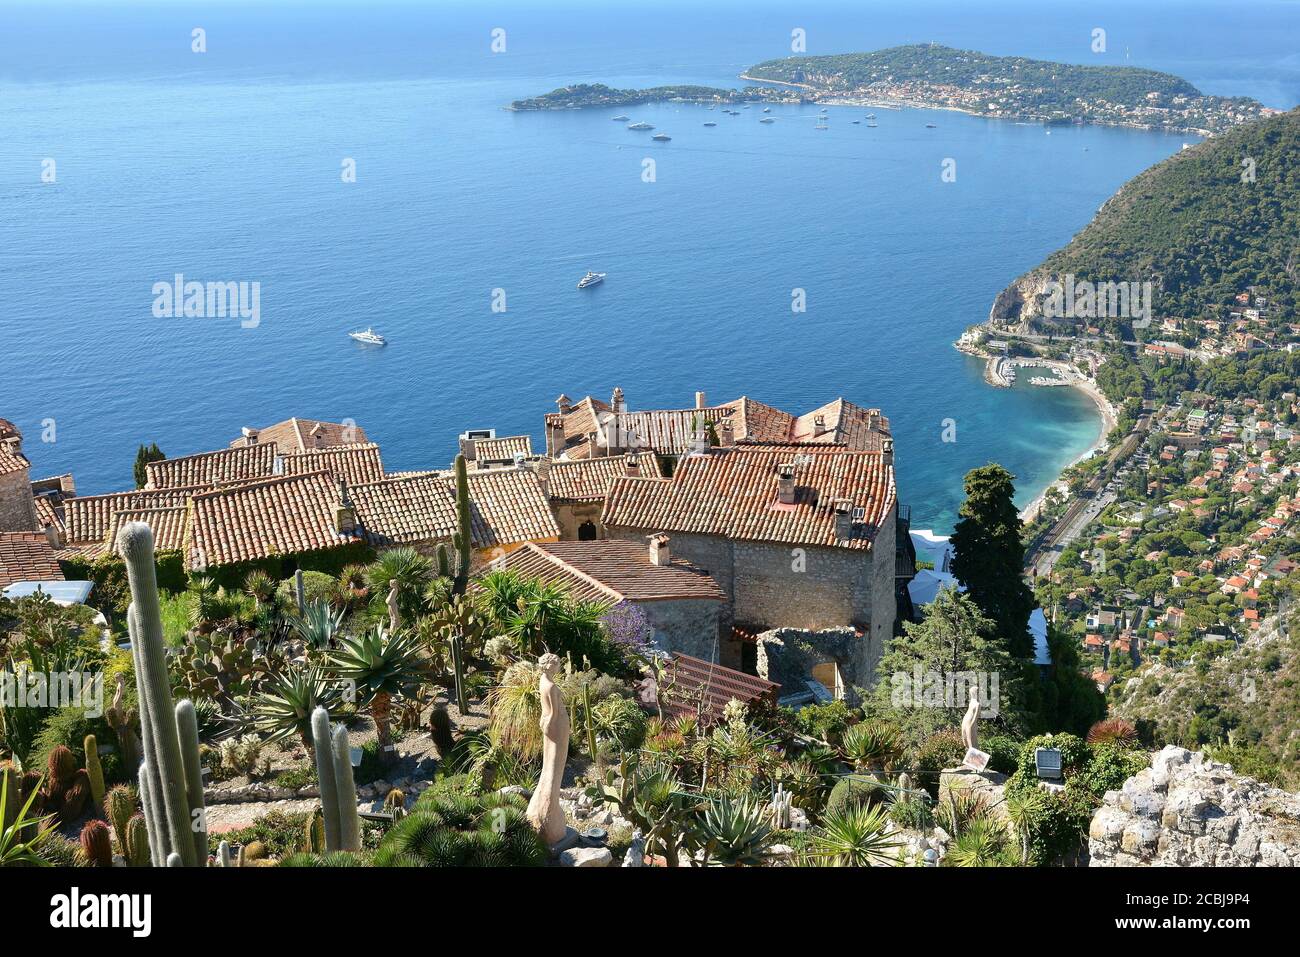 France, côte d'azur, le village d'Eze est un site renommé et célèbre du monde pour la vue sur la mer méditerranée depuis la falaise du sommet de la colline. Banque D'Images